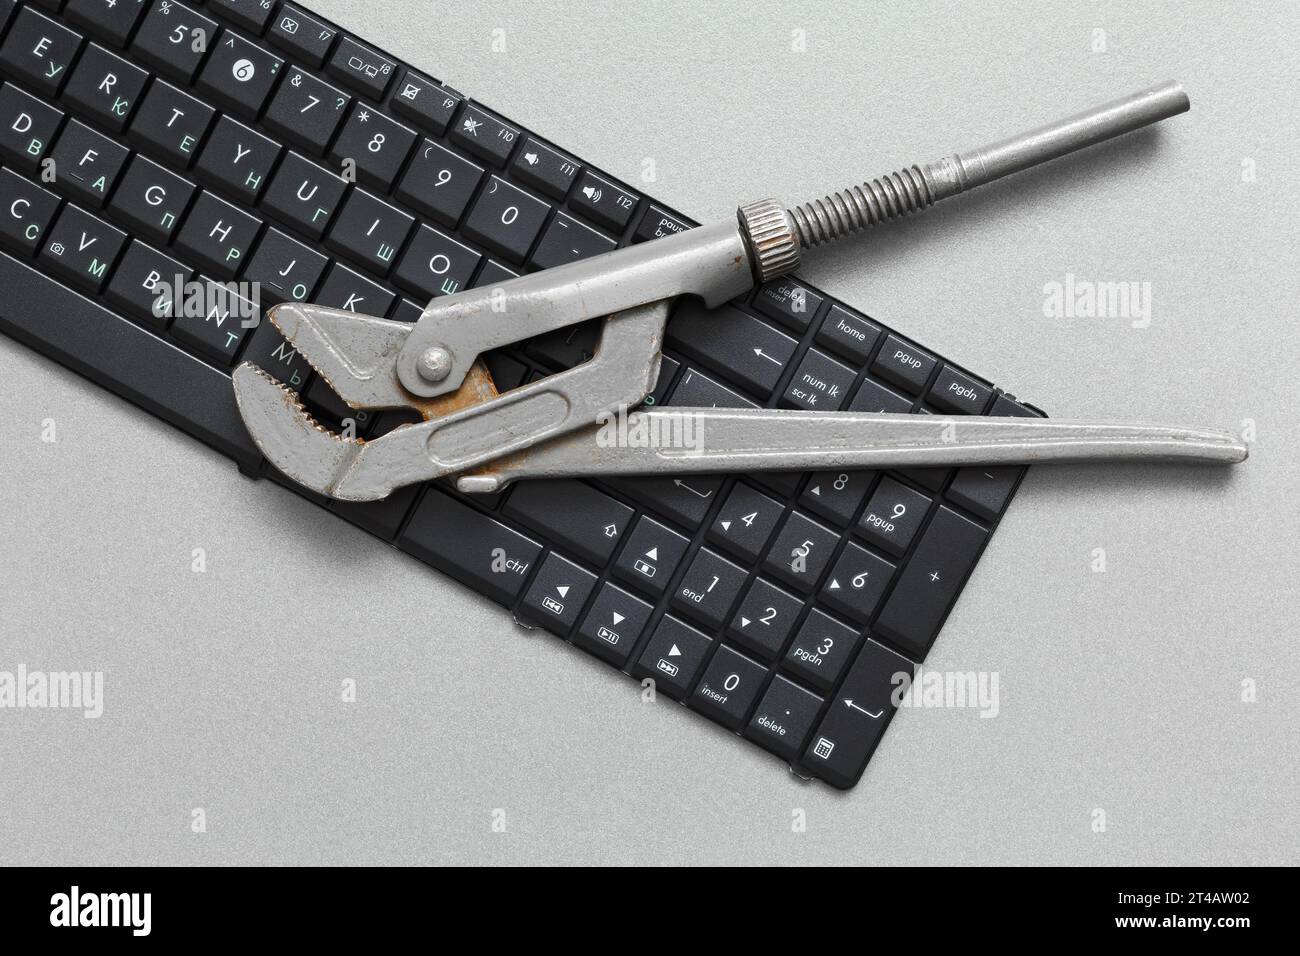 Der verstellbare Schraubenschlüssel befindet sich auf der Tastatur. Konzept zur Wartung und Reparatur von EDV-Geräten. Stockfoto